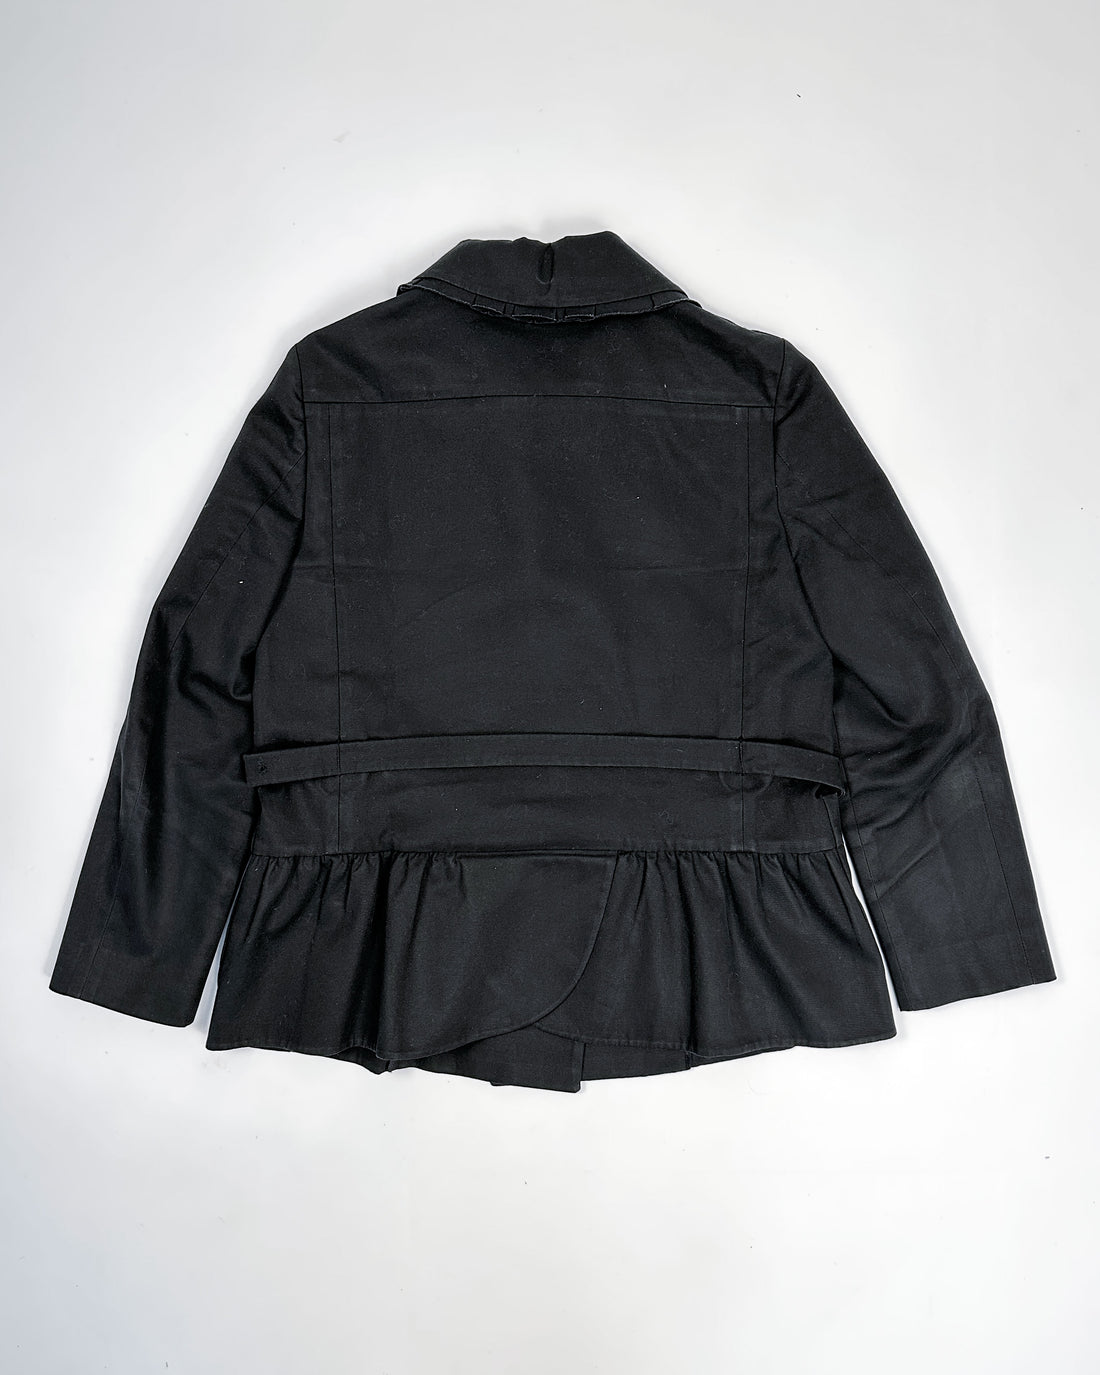 Miu Miu Black Short Trench Coat 2000's